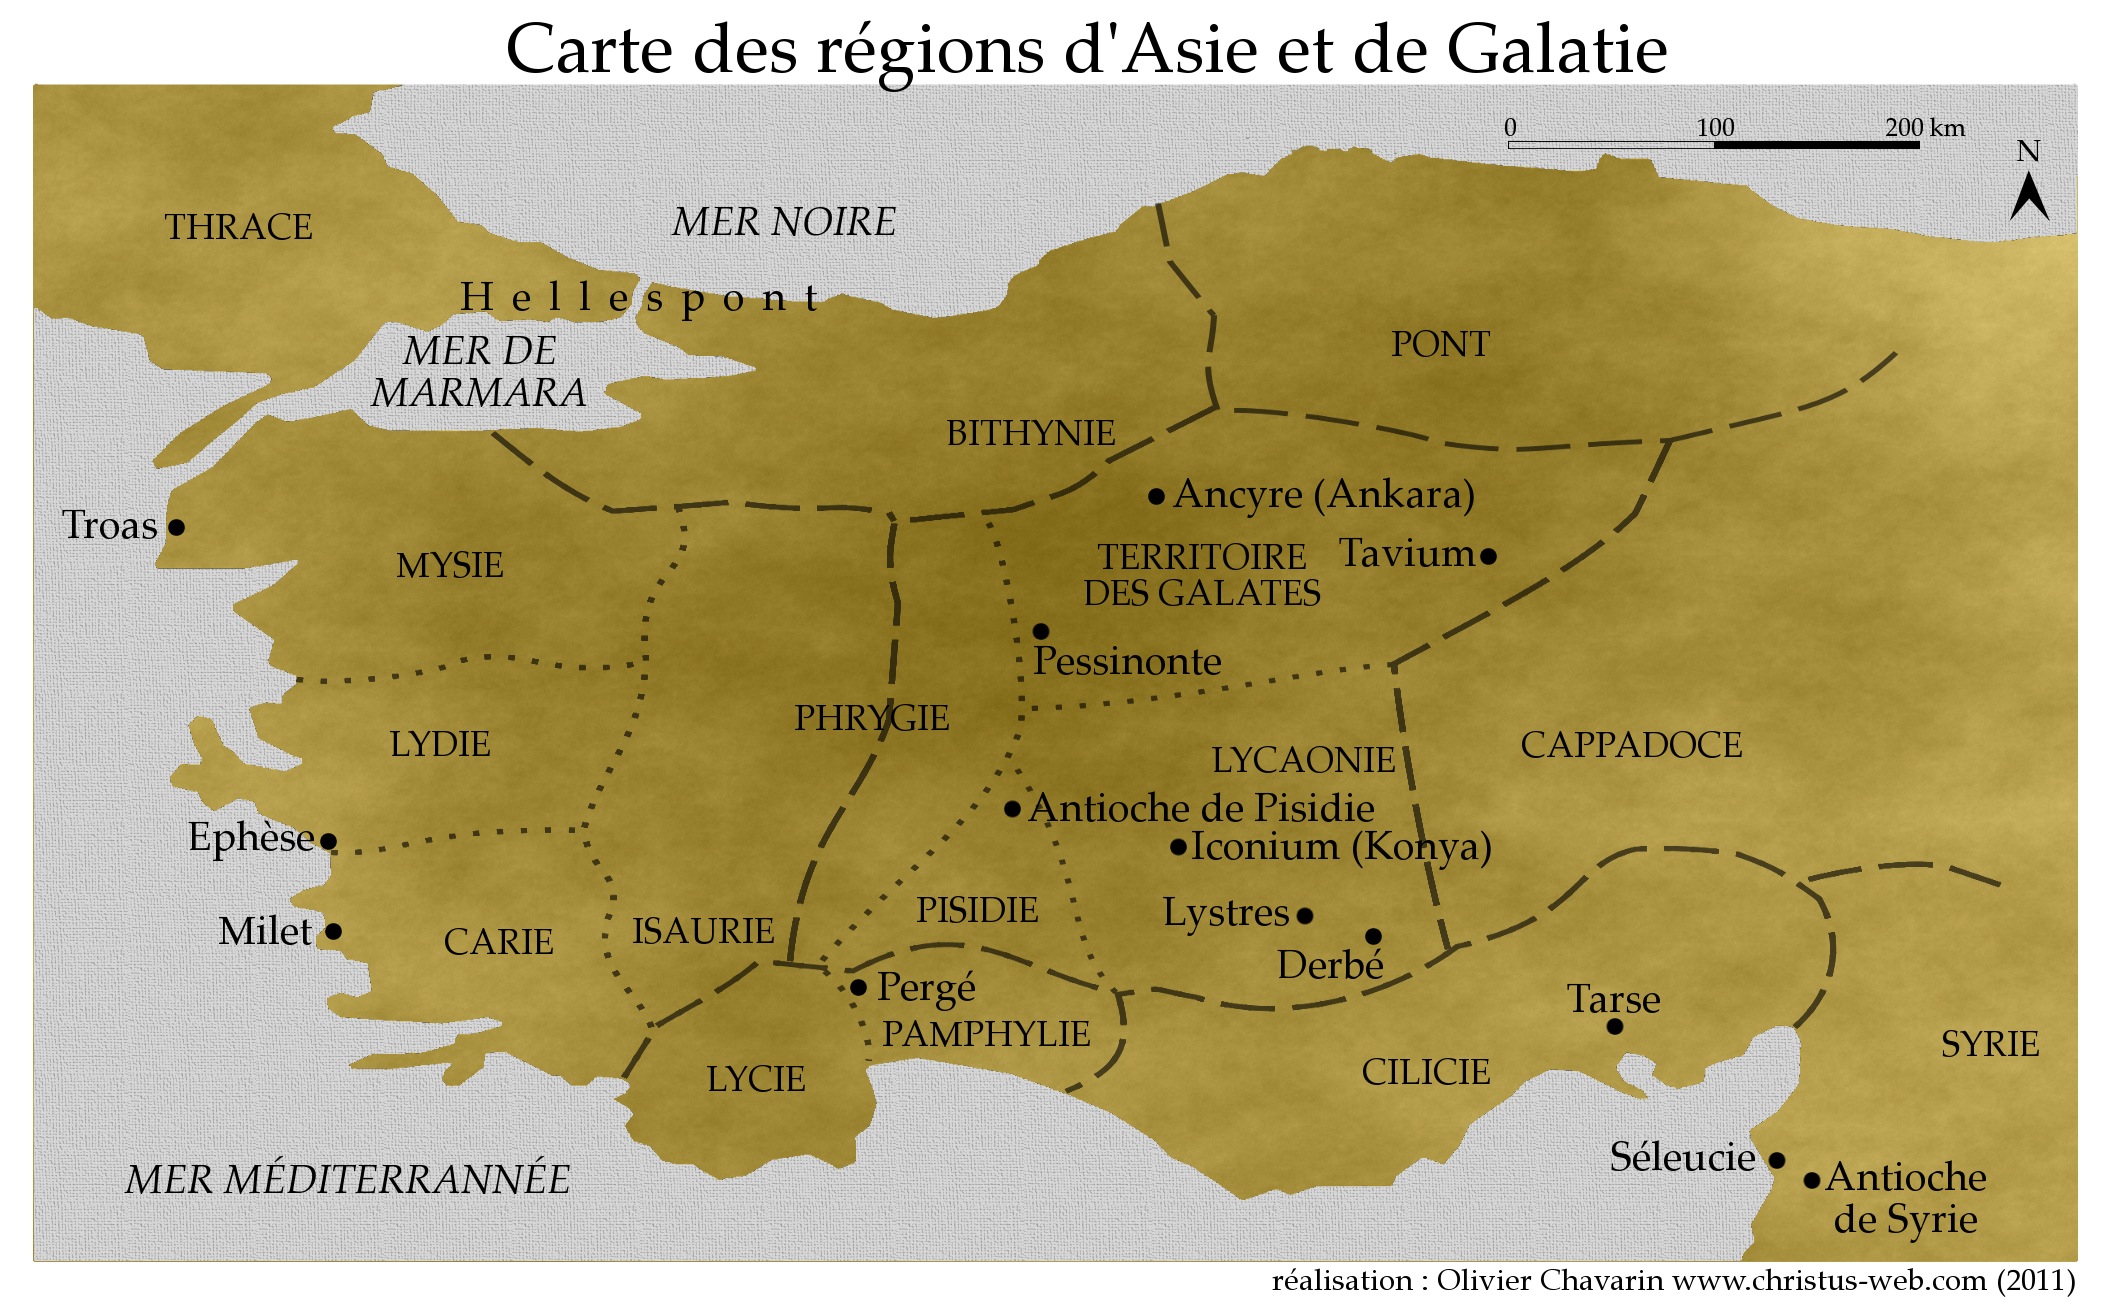 Carte des régions d’Asie & de Galatie.